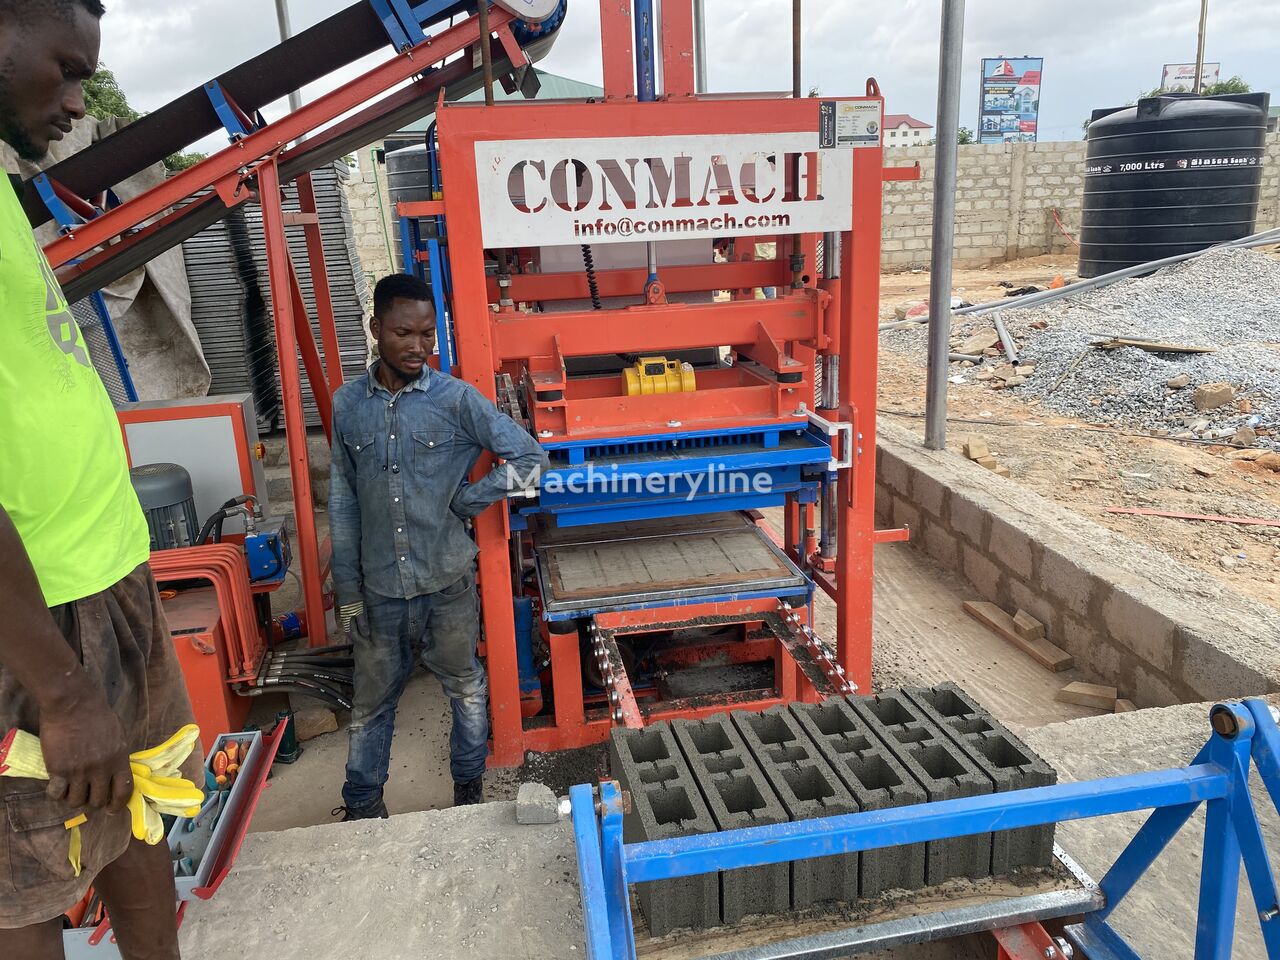 جديدة كتلة ماكينة Conmach BlockKing-12MS Concrete Block Making Machine - 4.000 units/shift